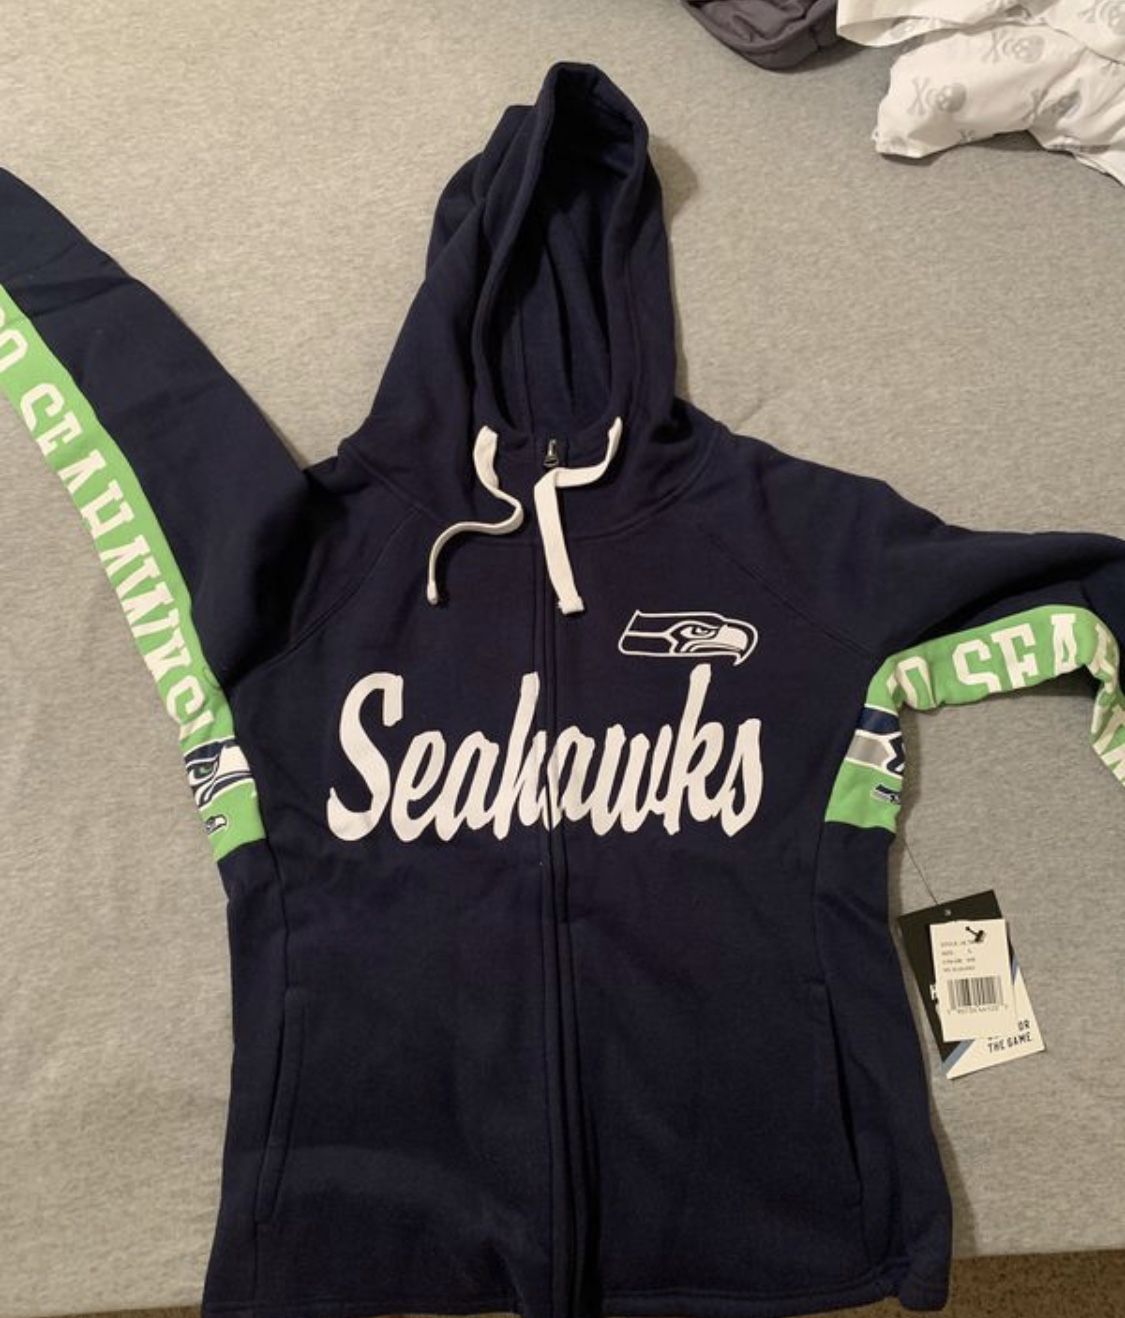 Seattle Seahawks women’s large sweatshirt